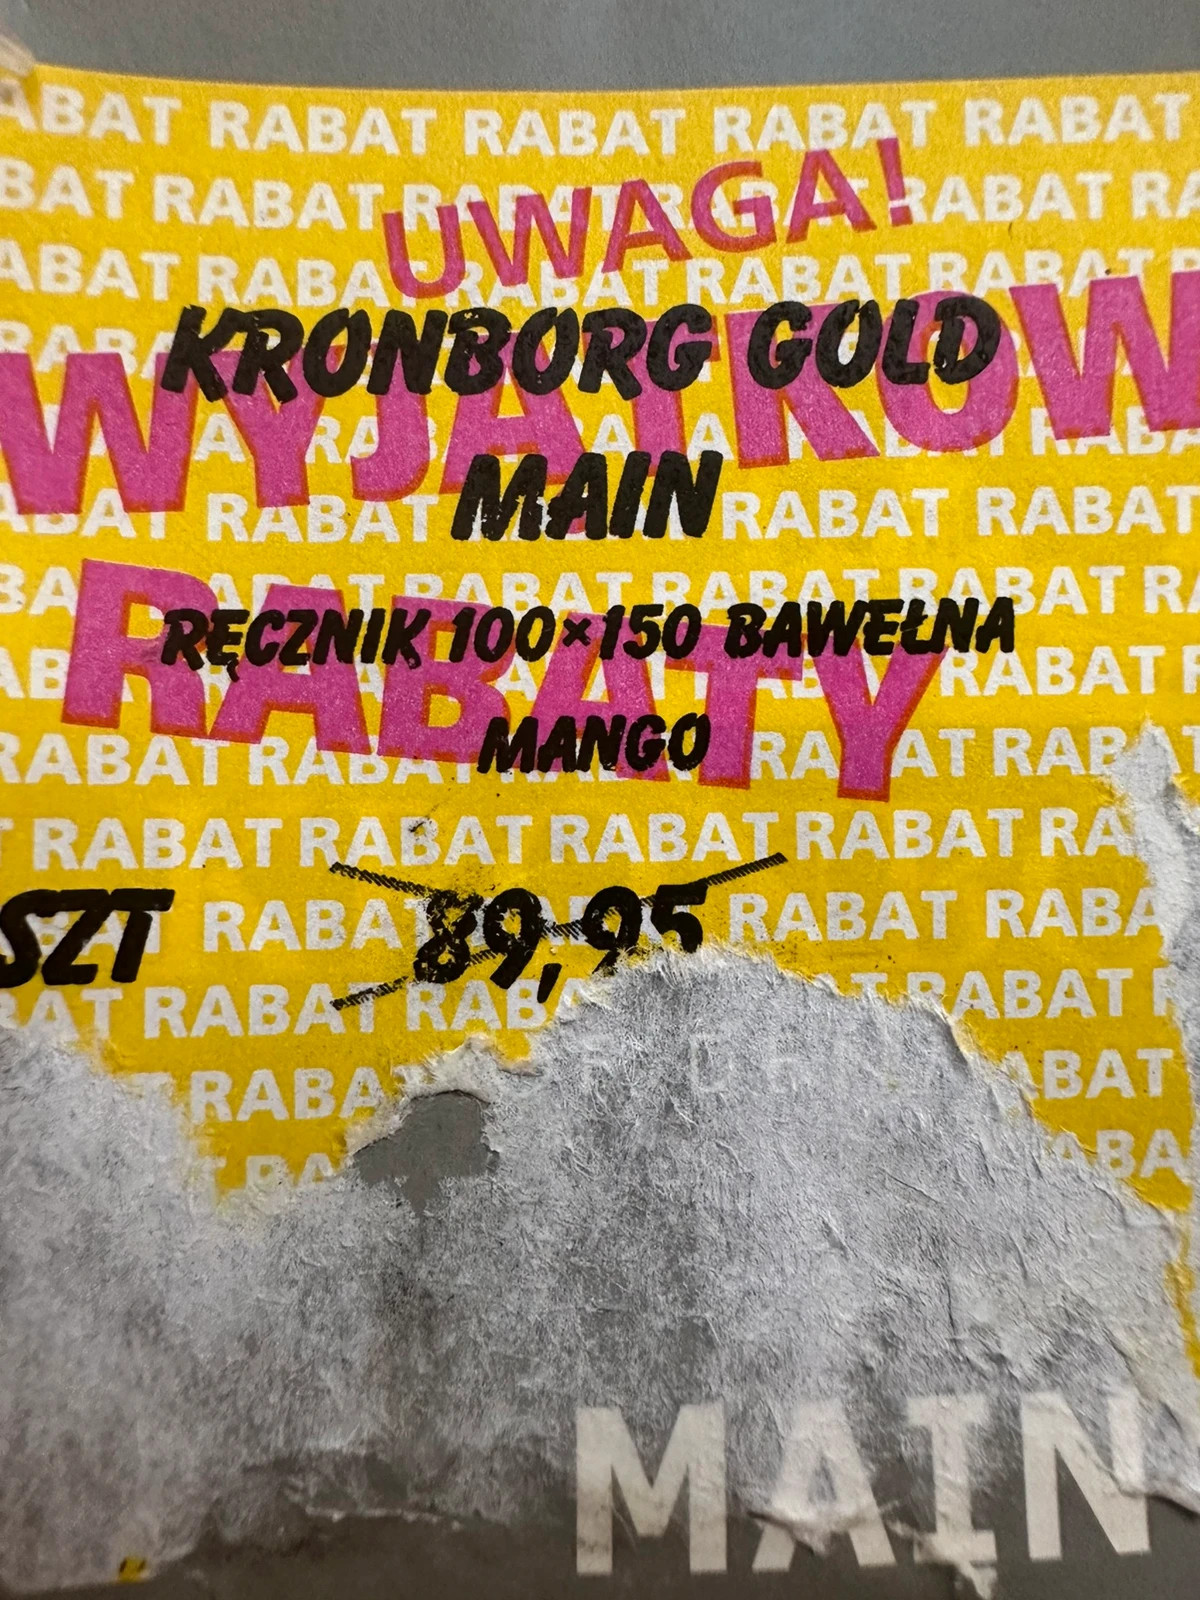 Ręcznik Kronborg Gold mango 100x150